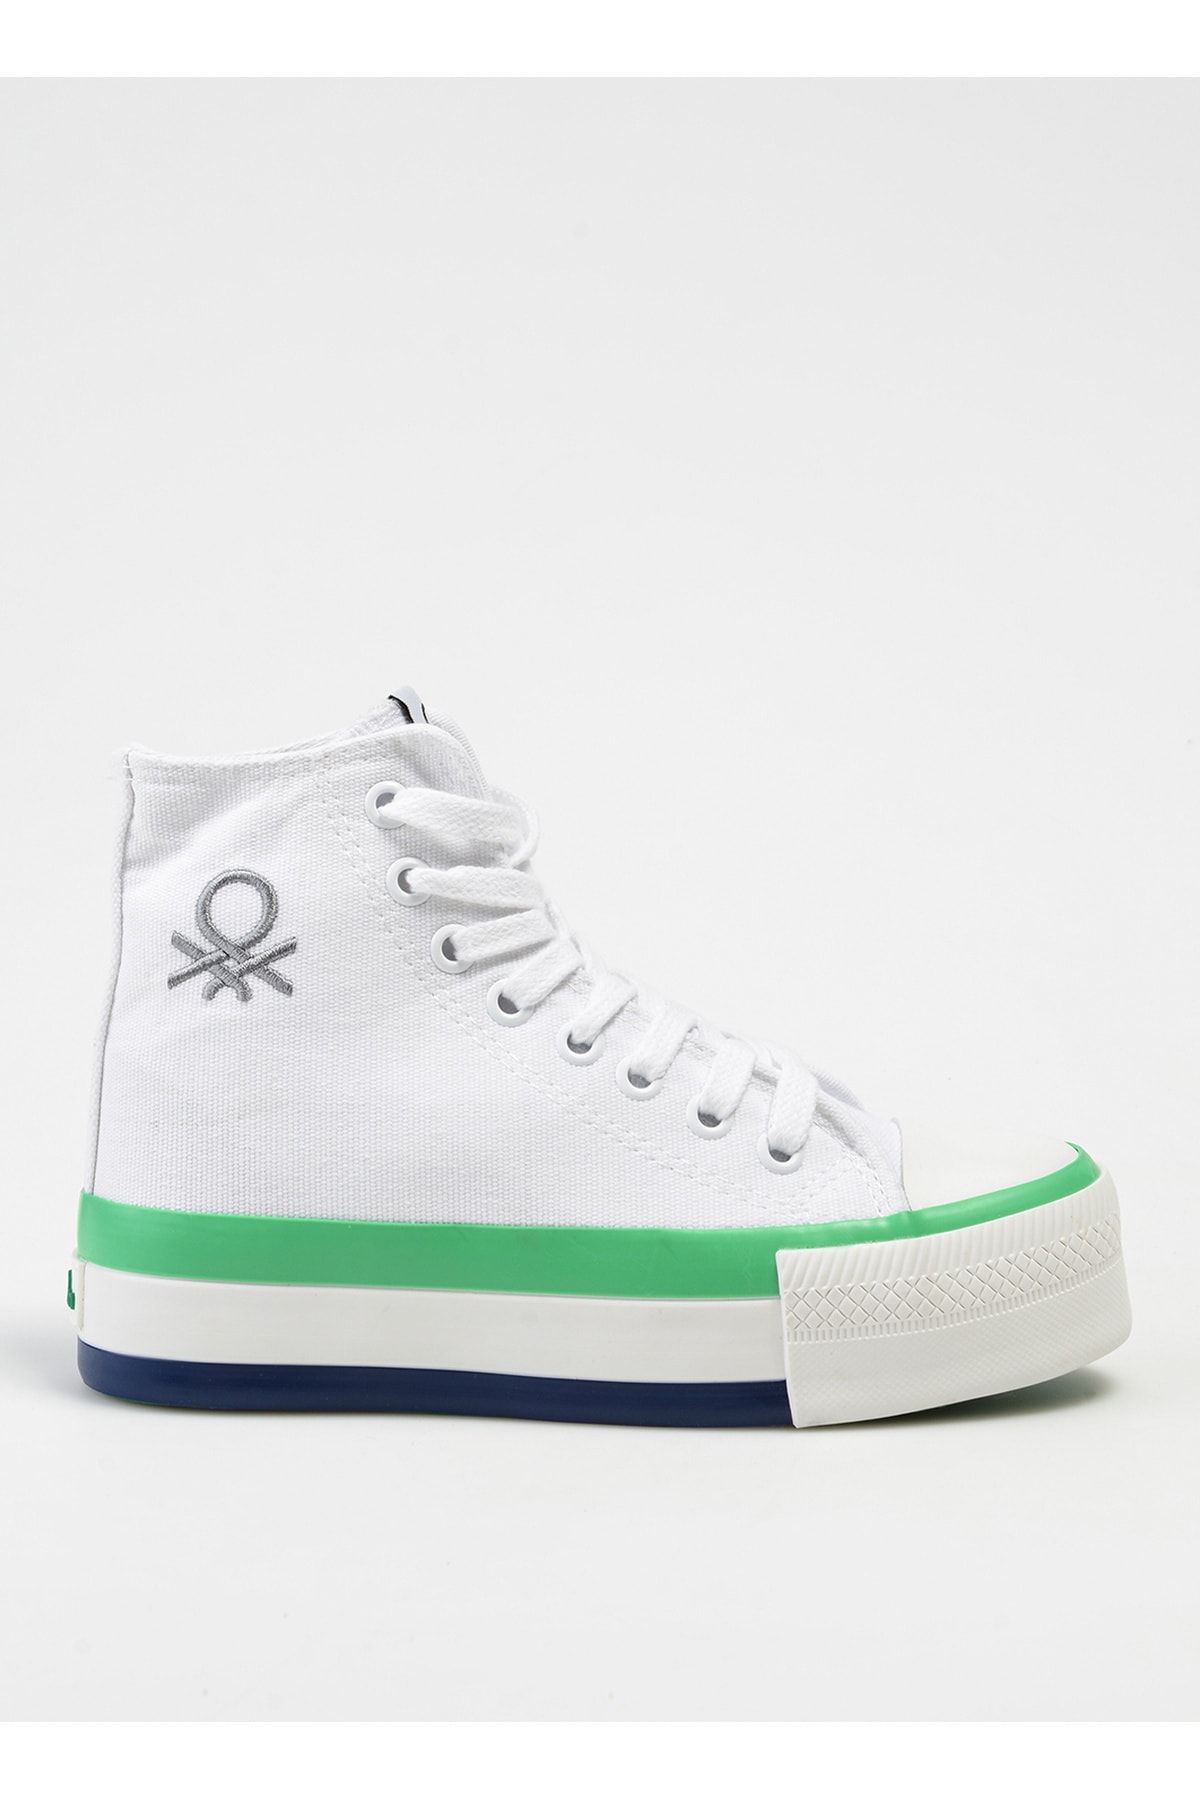 Benetton Beyaz - Yeşil Kadın Sneaker BN-30944